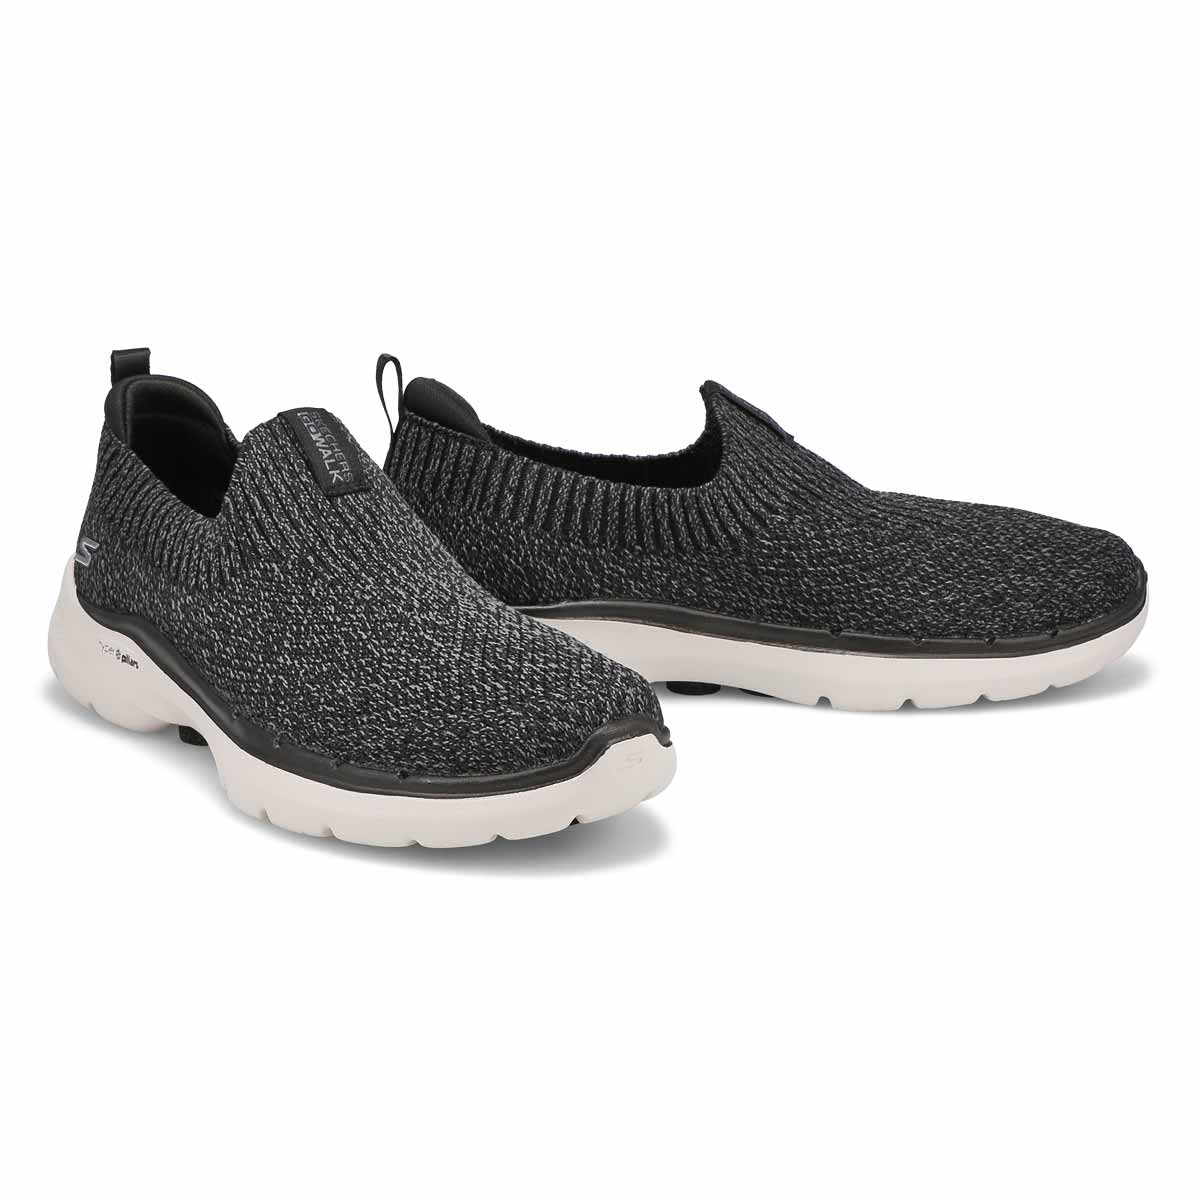 Women's GOwalk 6 Slip On Sneaker - Black/Grey